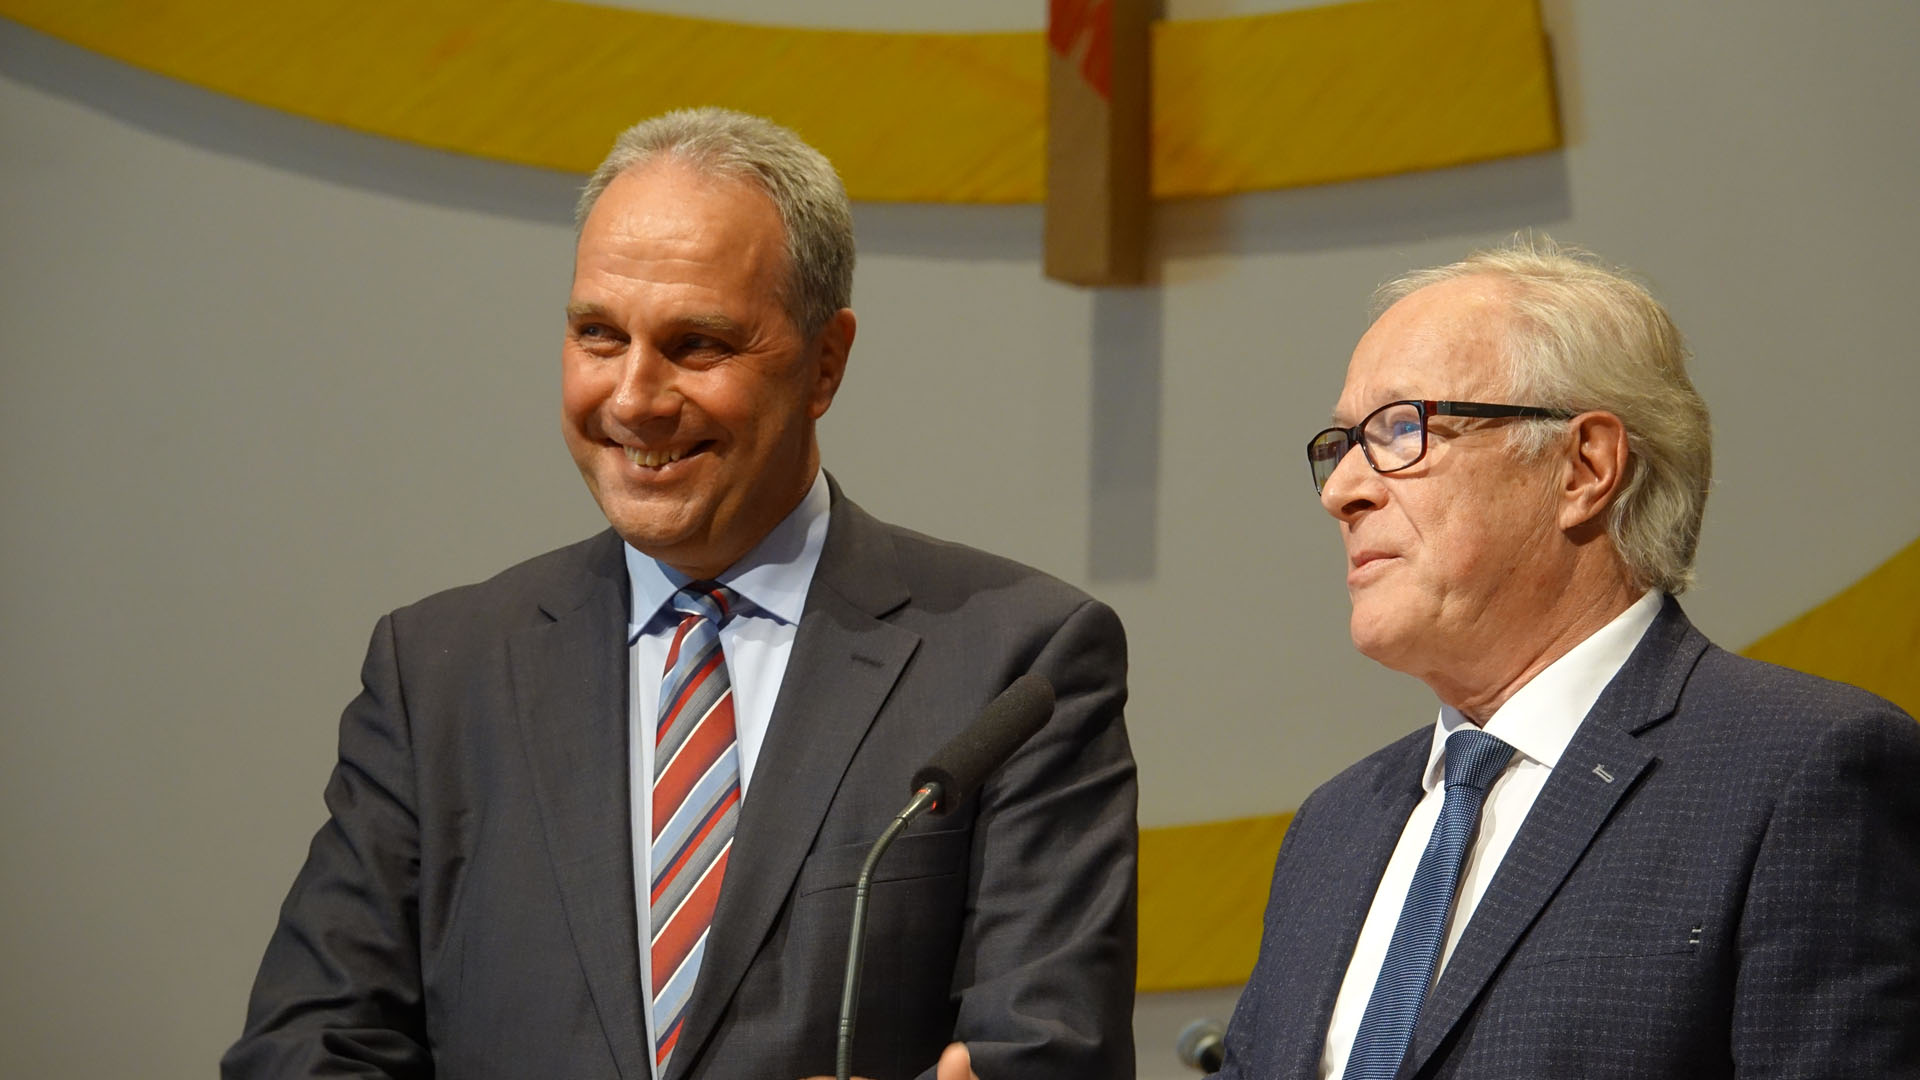 Michael Diener (li.) wurde von seinem Vorgänger Jürgen Werth aus dem Amt des Vorsitzenden der Deutschen Evangelischen Allianz verabschiedet